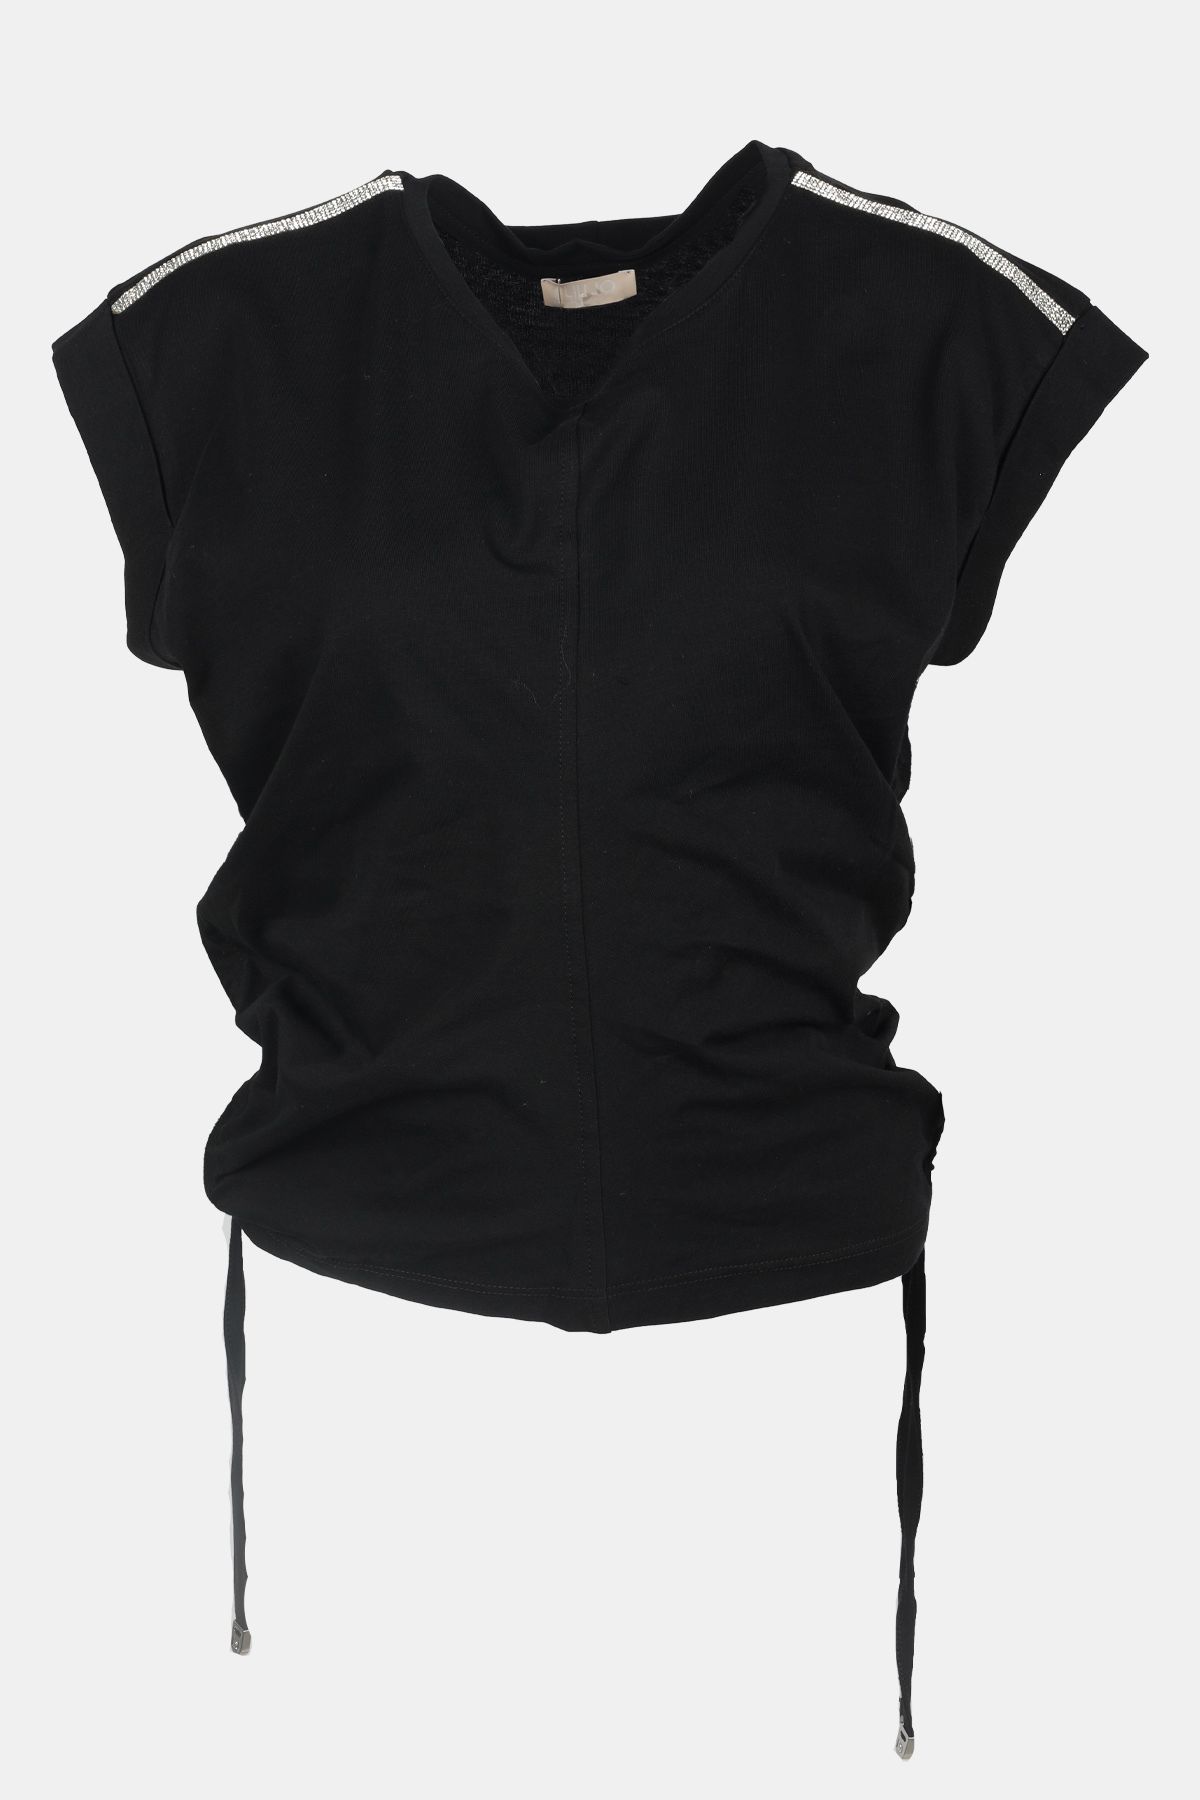 Liu Jo Kadın Pamuklu Dokuma Kumaş Marka Logolu Siyah T-Shirt MA4342J6308-22222